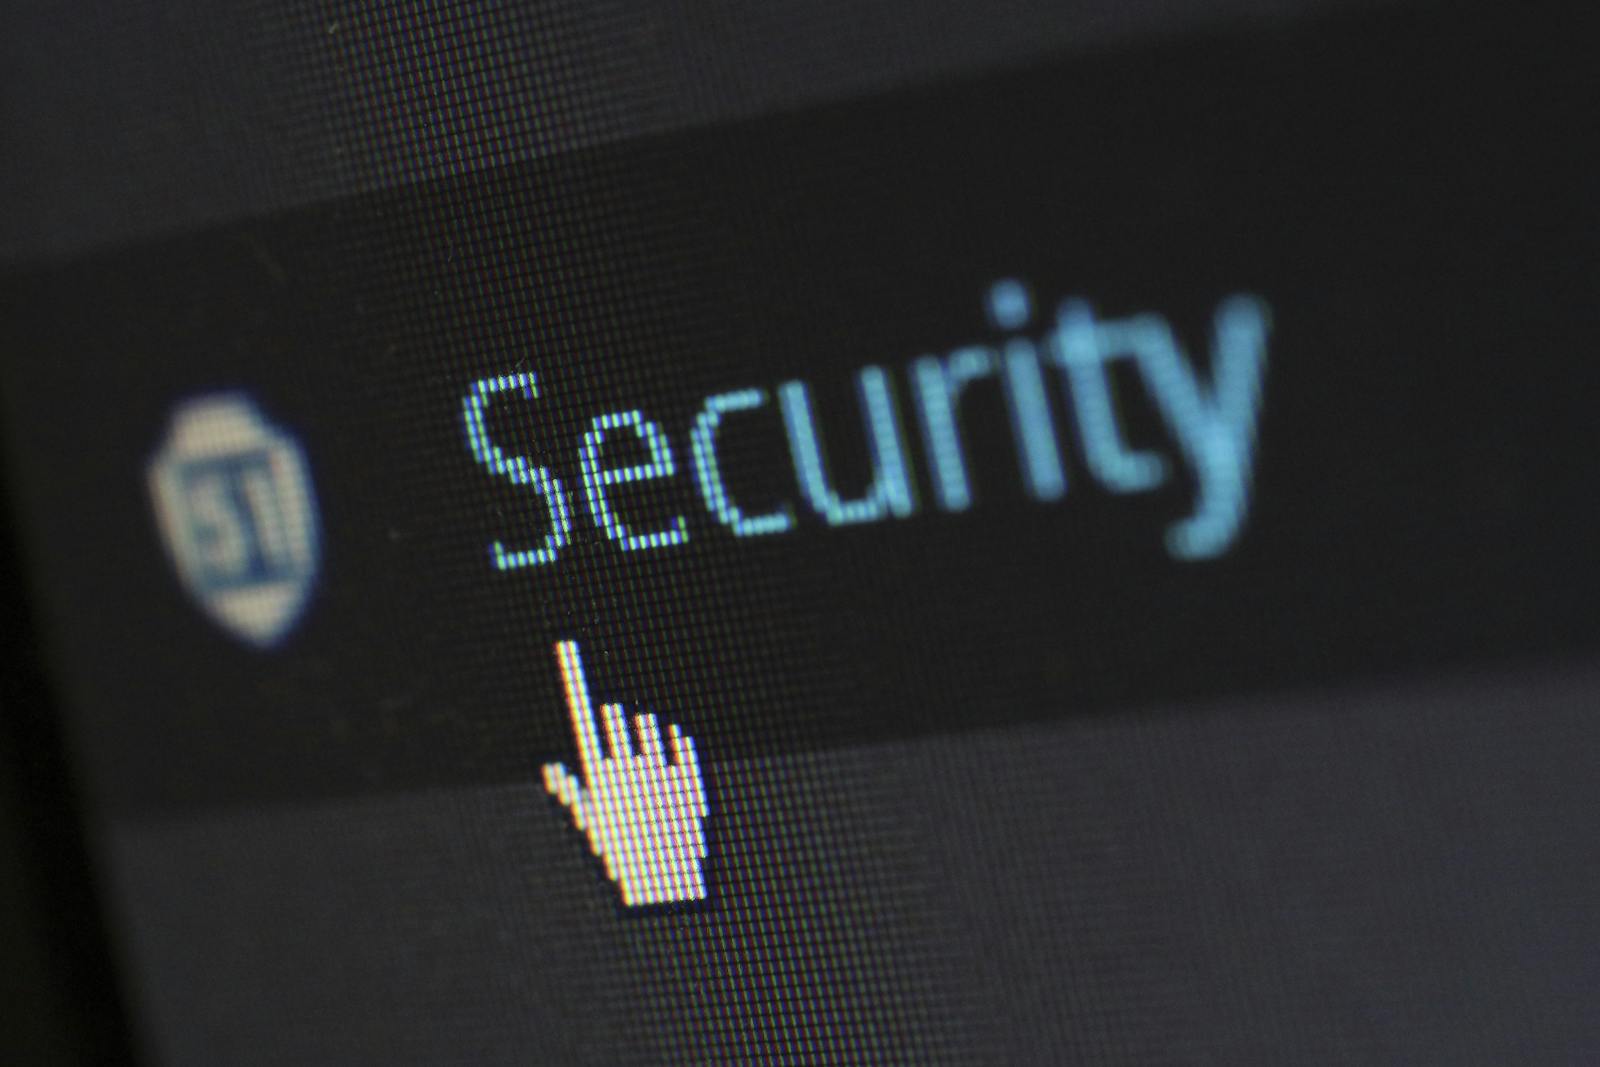 Jak Chronić Swoją Prywatność i Bezpieczeństwo Online?